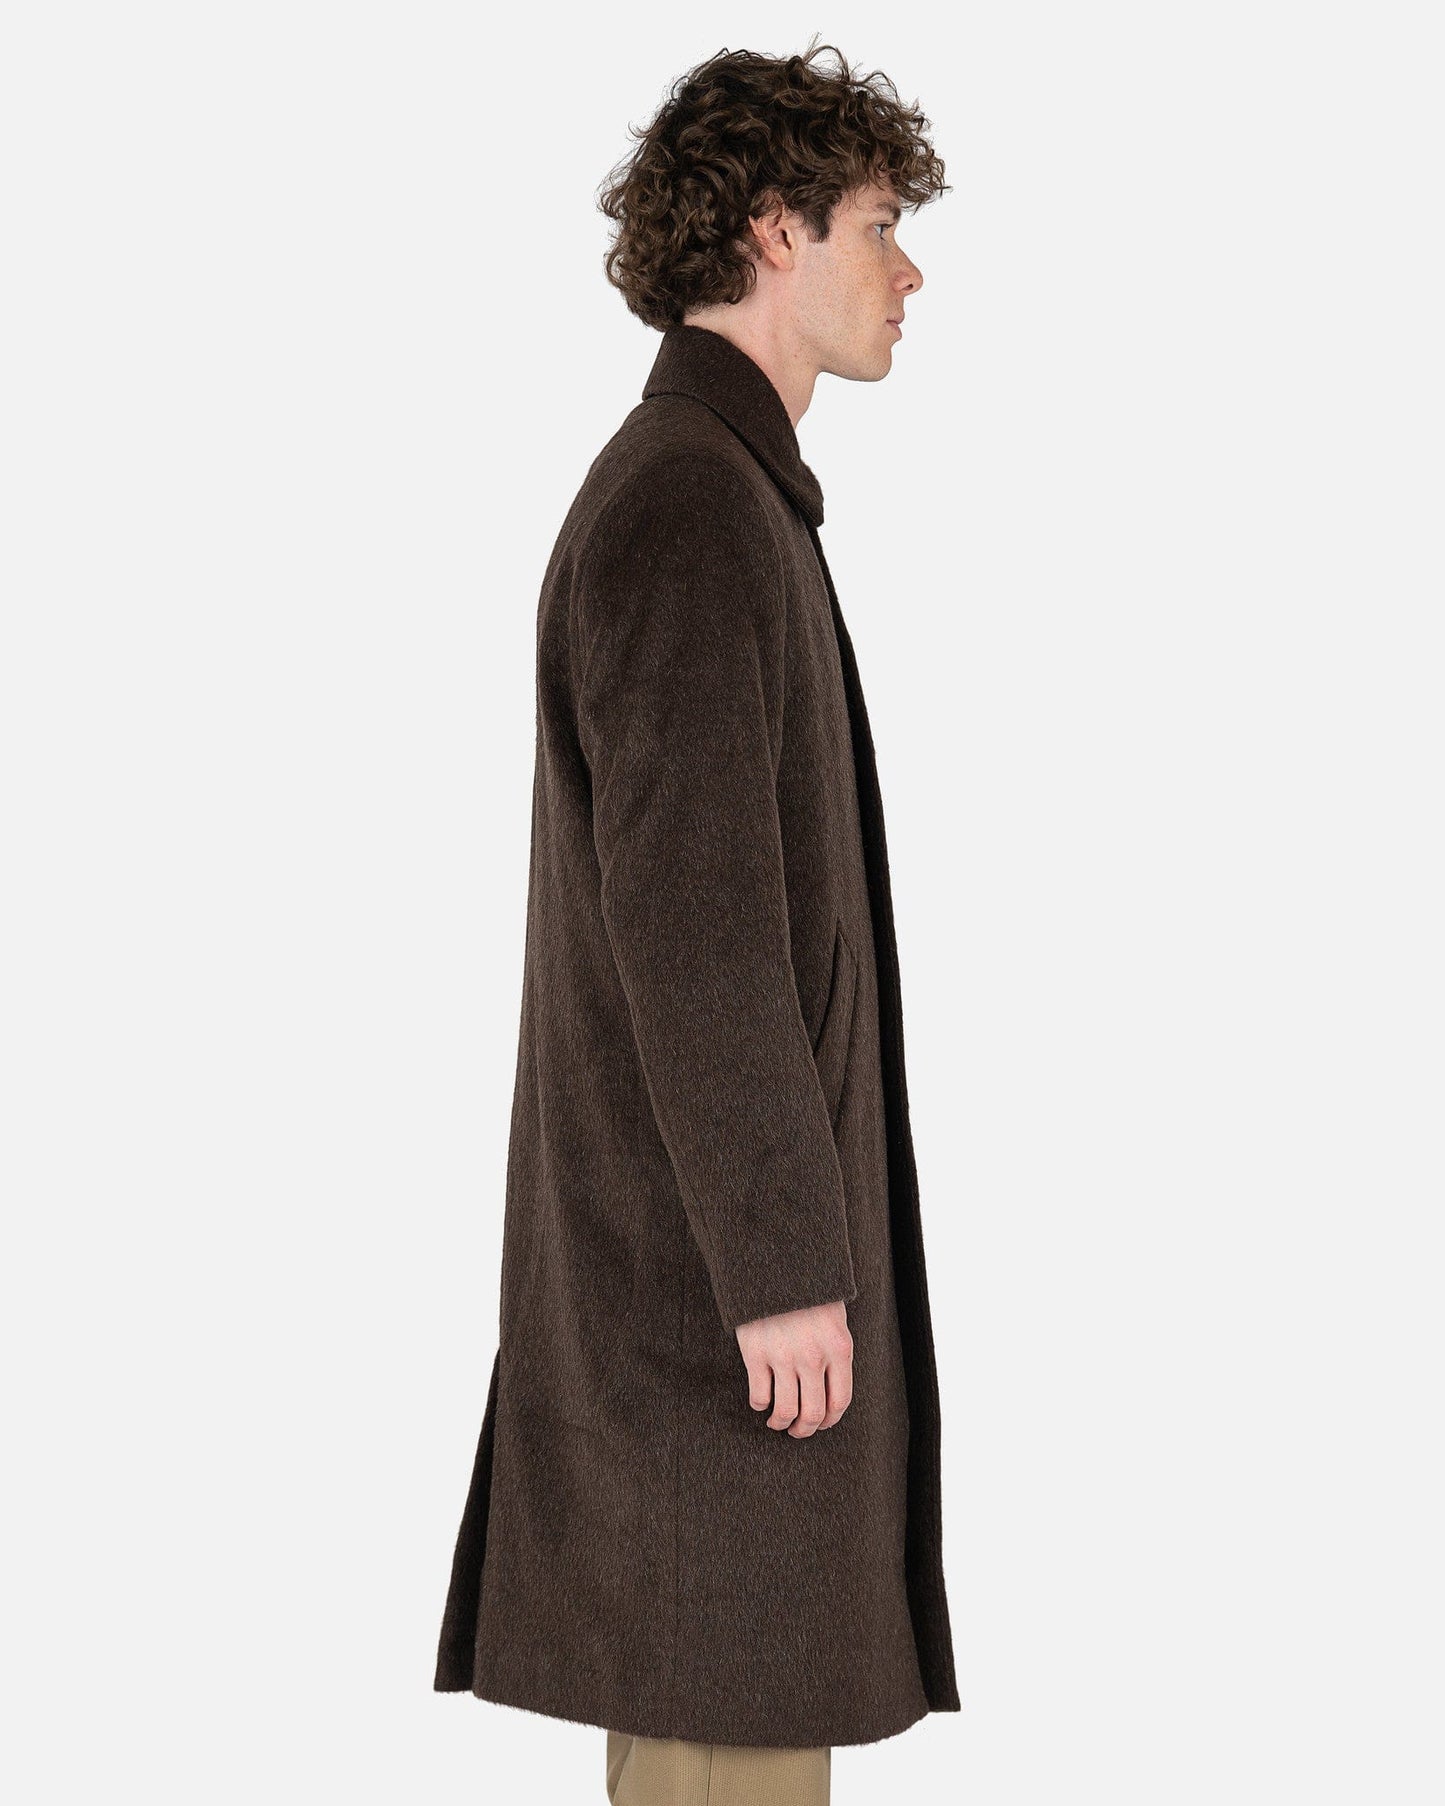 Séfr Men's Jackets Esco Coat in Brown Mohair